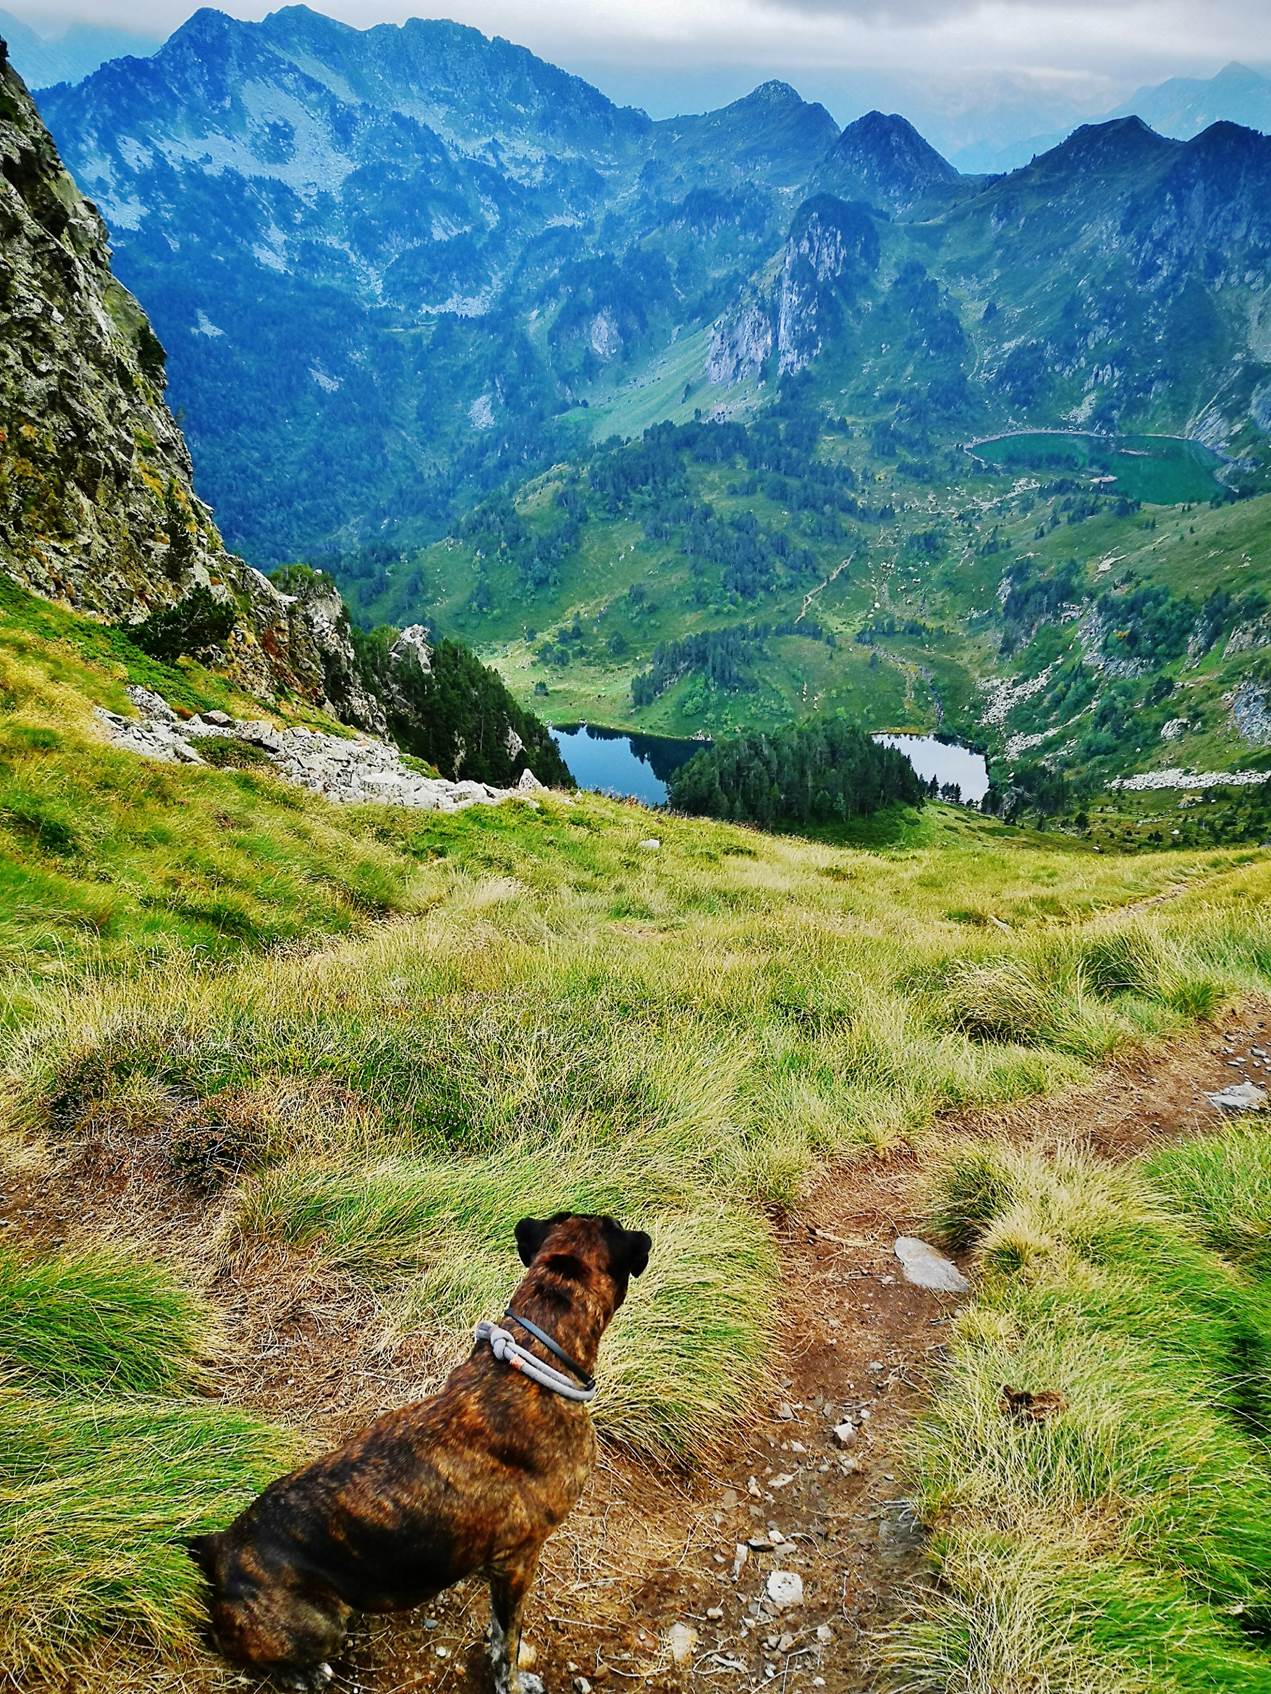 Une image contenant herbe, extérieur, montagne, chien

Description générée automatiquement